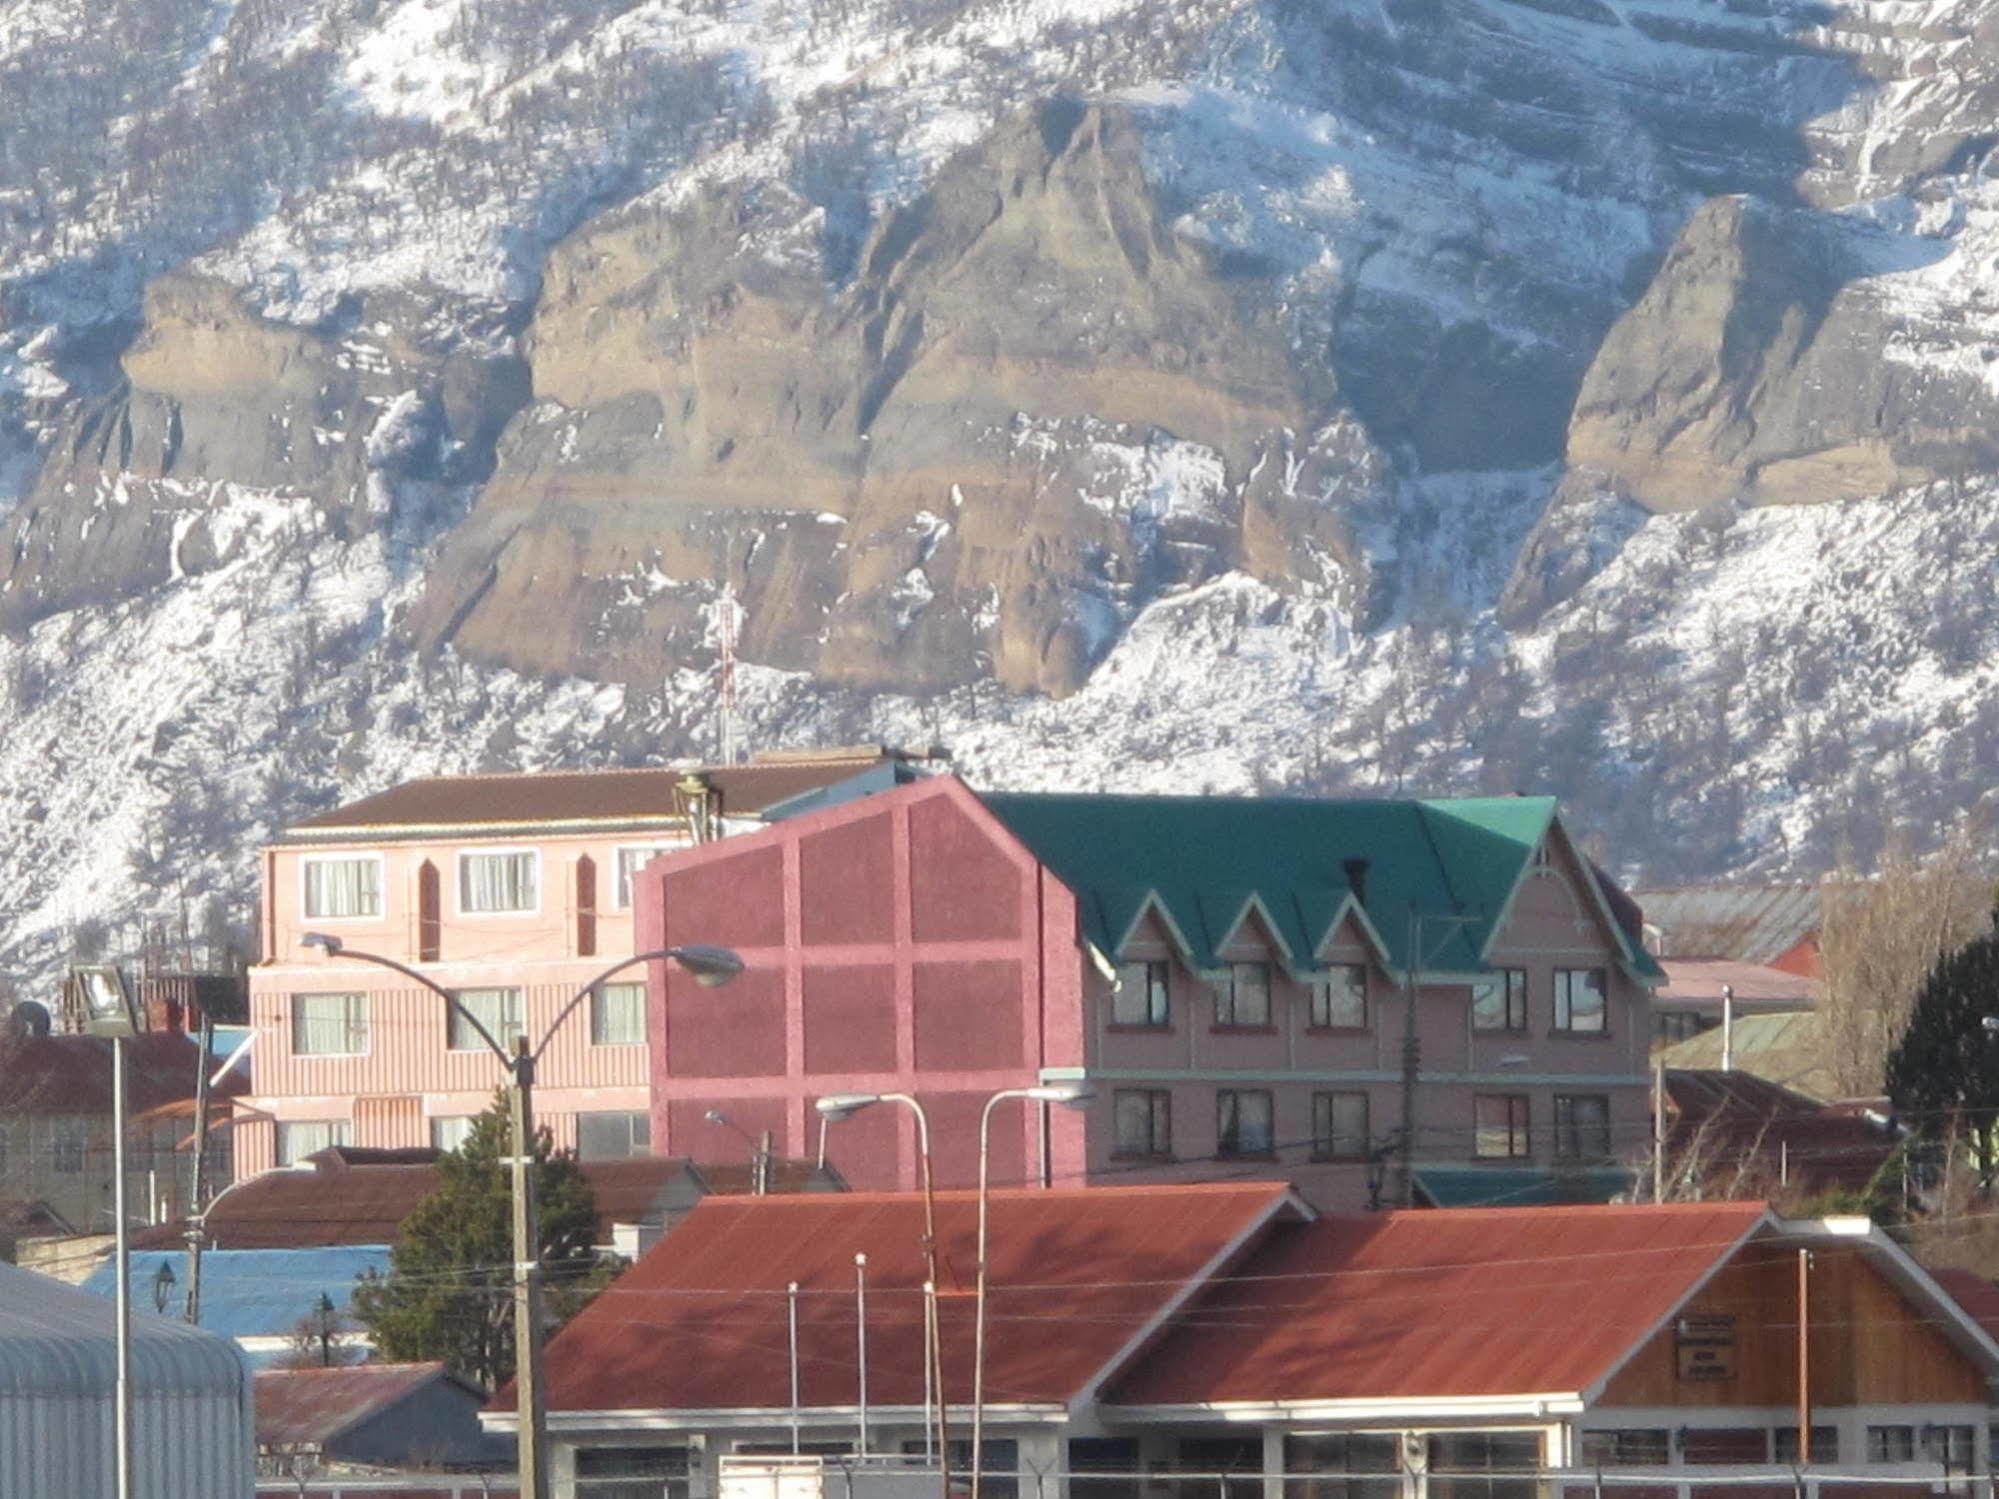 Hotel Saltos Del Paine Puerto Natales Dış mekan fotoğraf